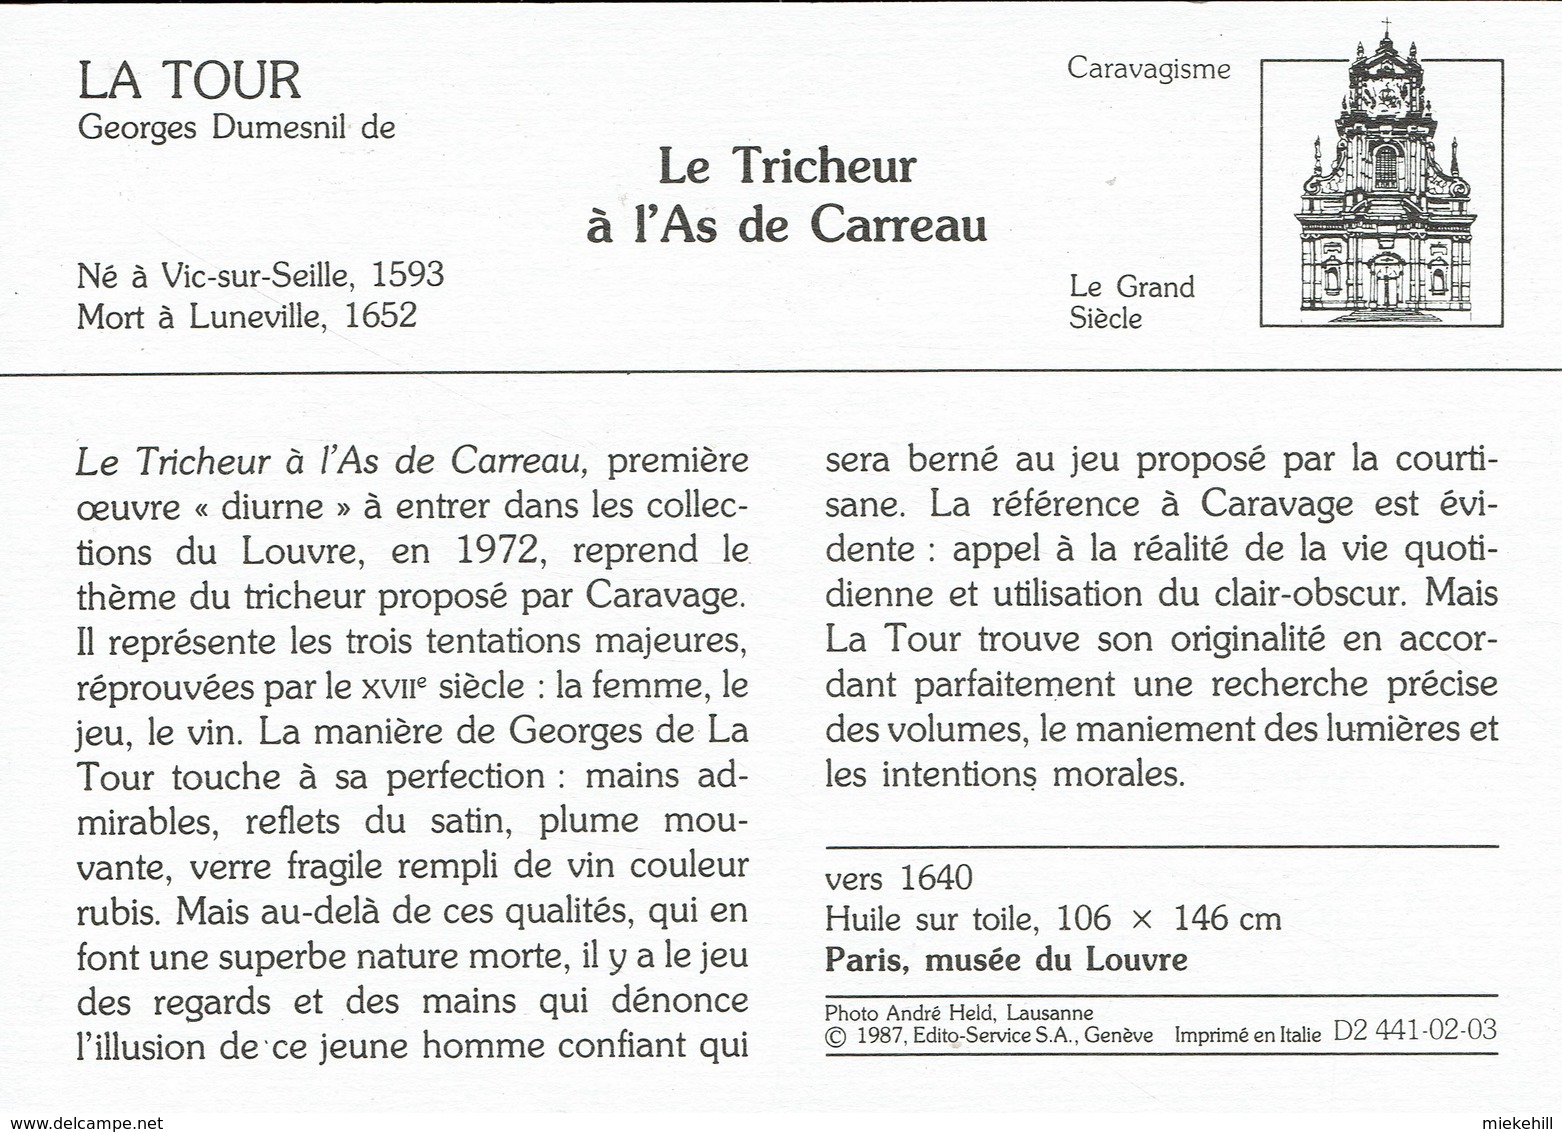 JEUX DE CARTE-TRICHEUR  A L'AS-VALSSPELER MET RUITENAAS-TABLEAU DE GEORGES LA TOUR-PARIS MUSEE DU LOUVRE - Speelkaarten